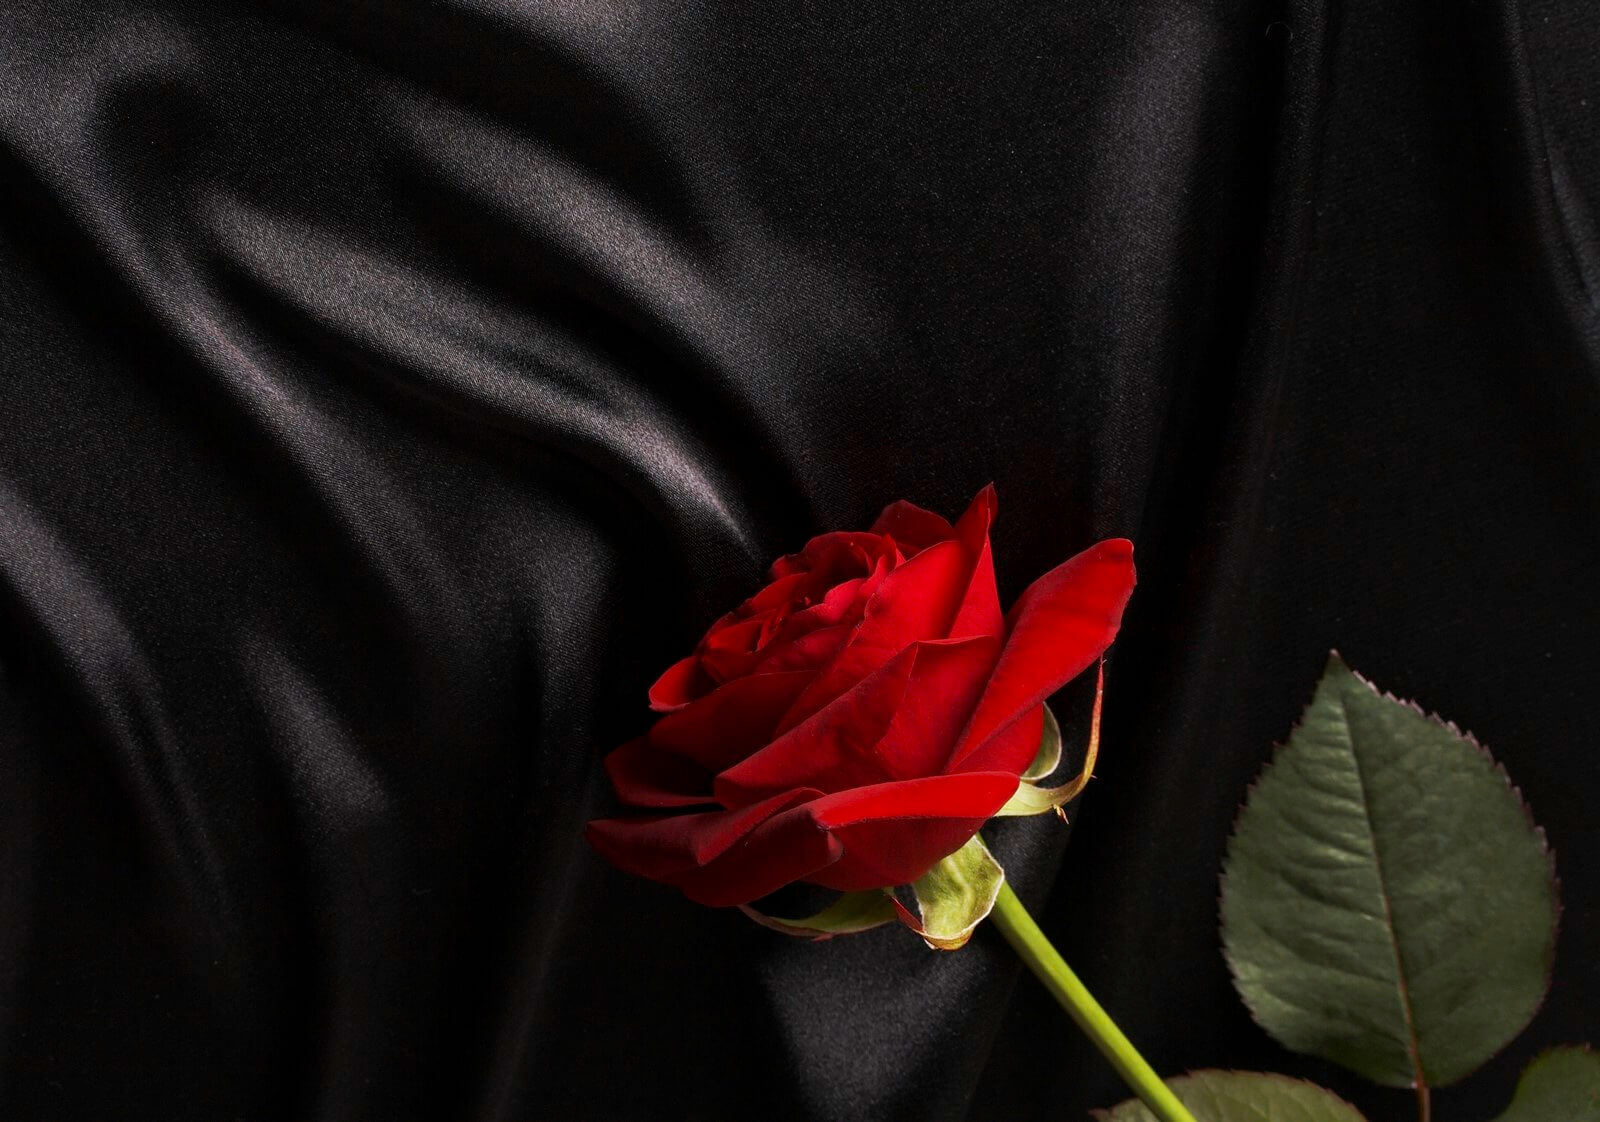 Leinwandbild Bild Wandbild Natur & Blumen rote Rose auf schwarzer Seide